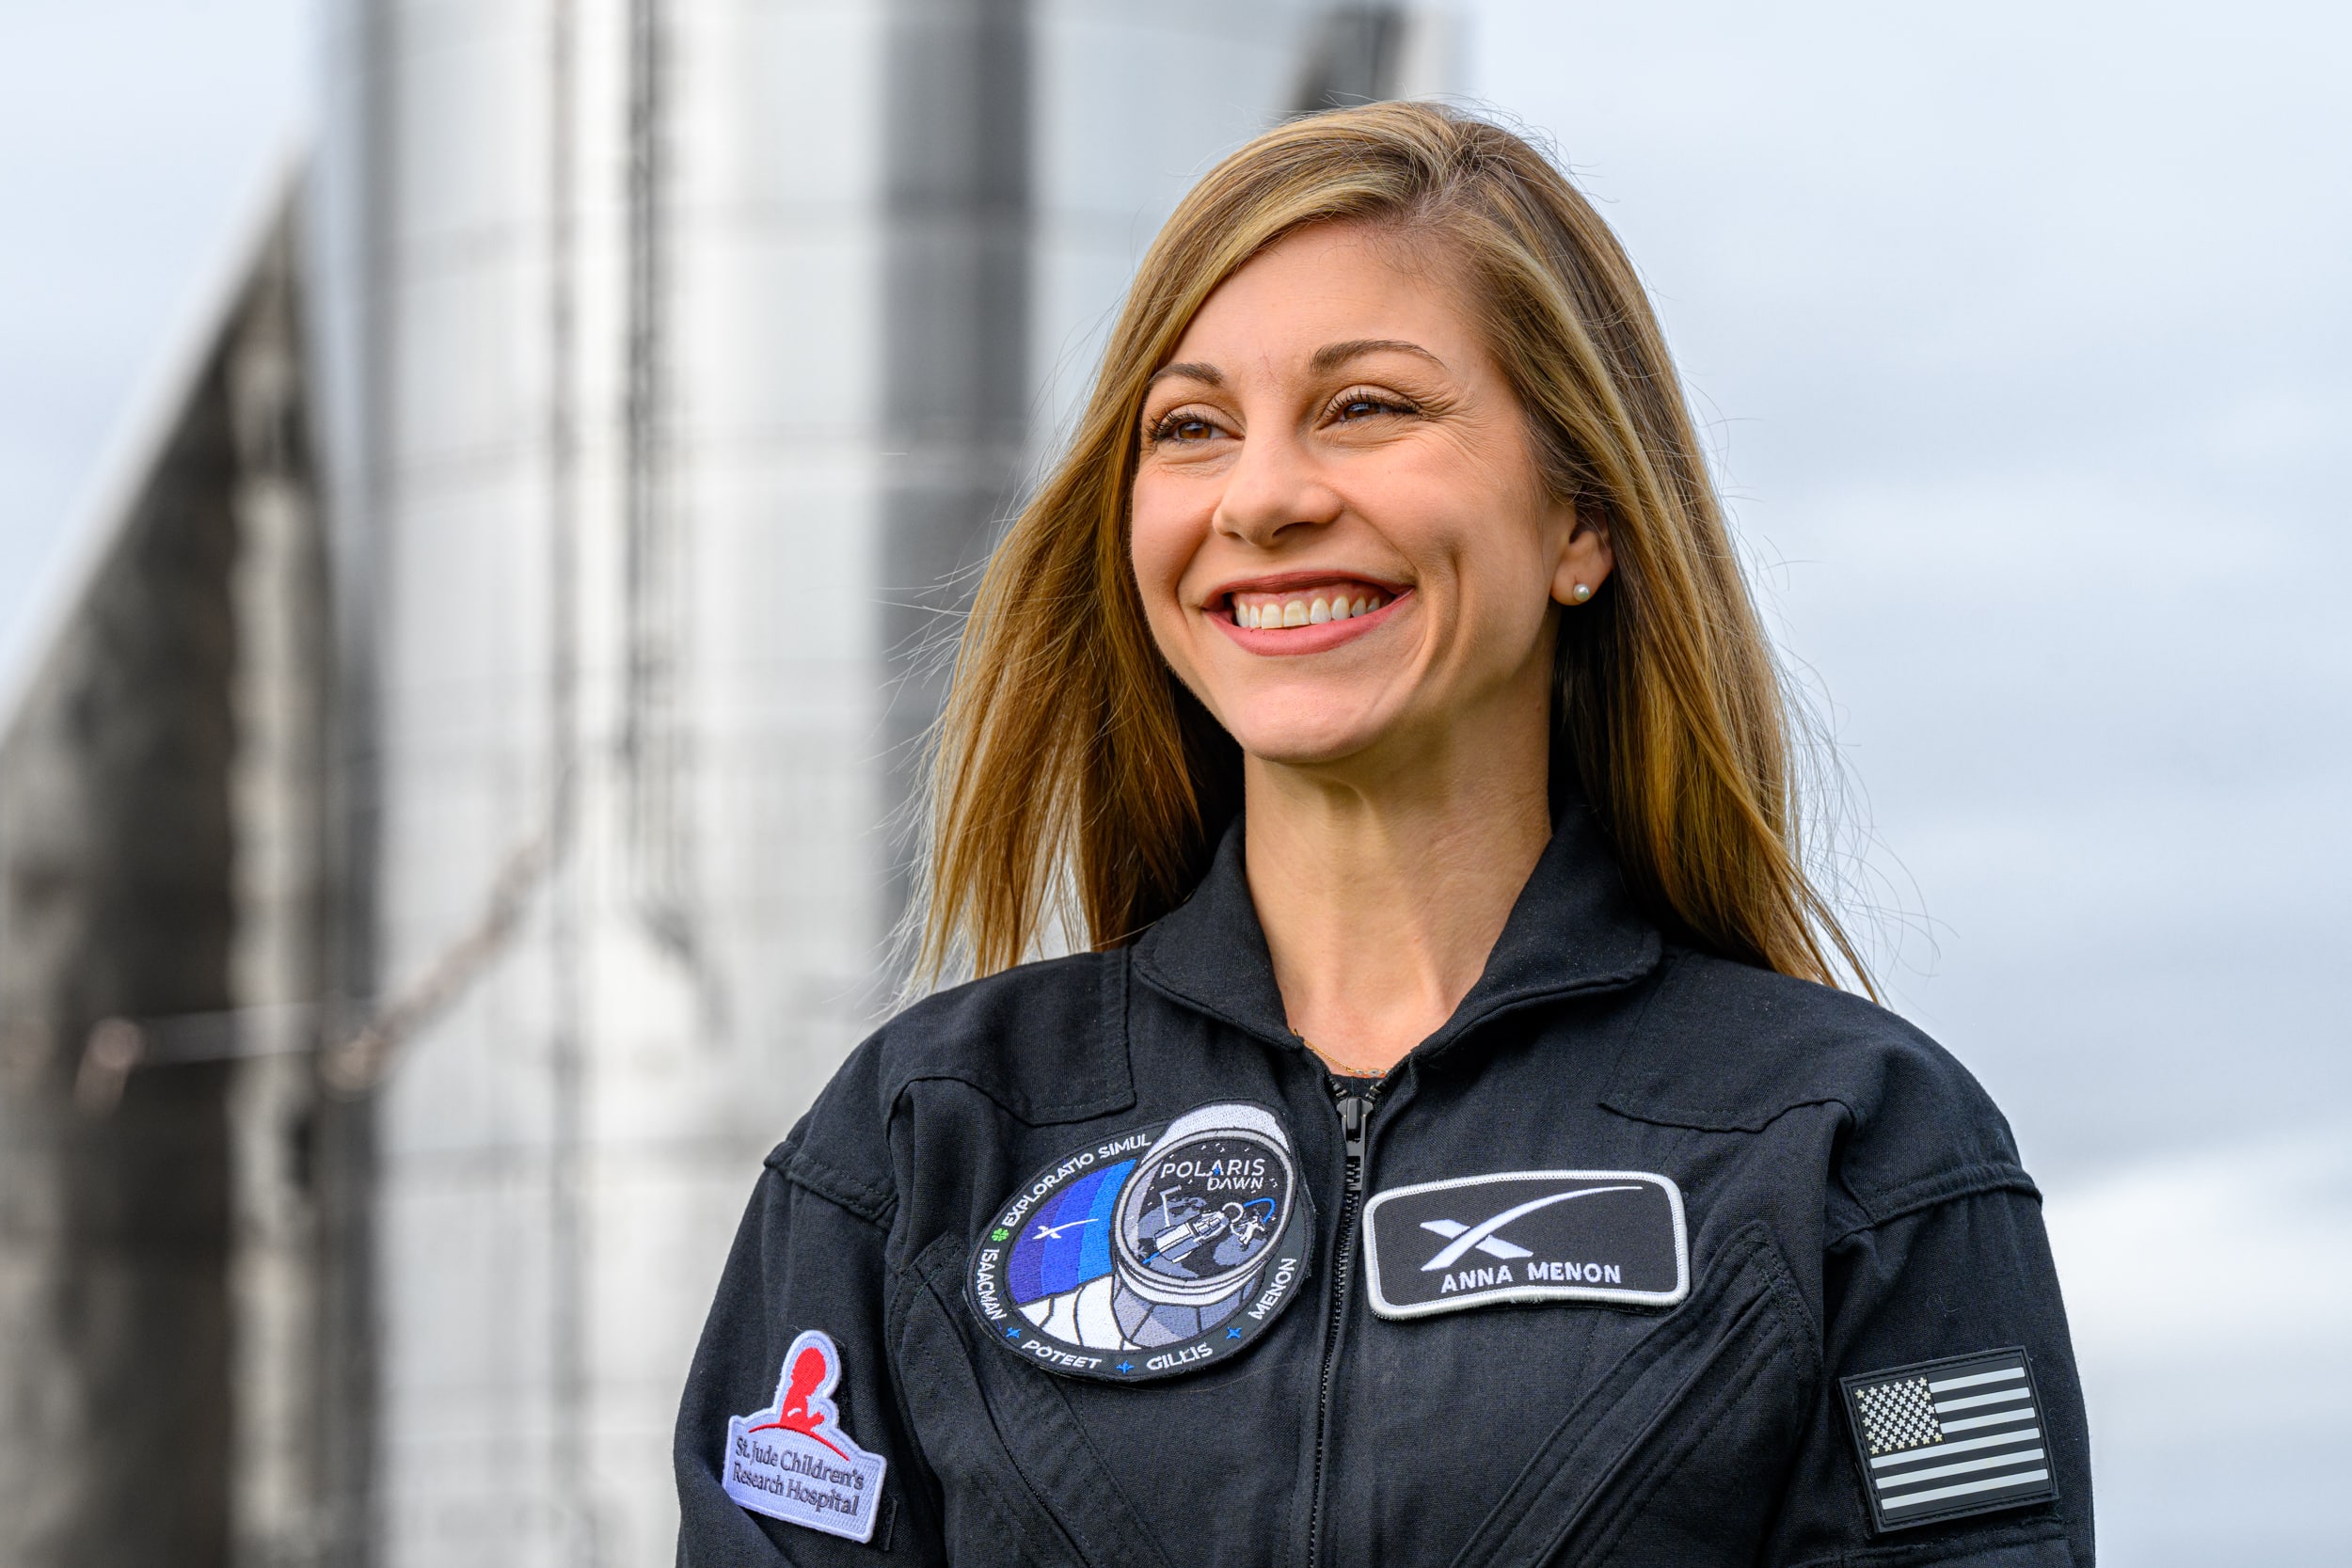 Anna Wilhelm Menon in SpaceX uniform